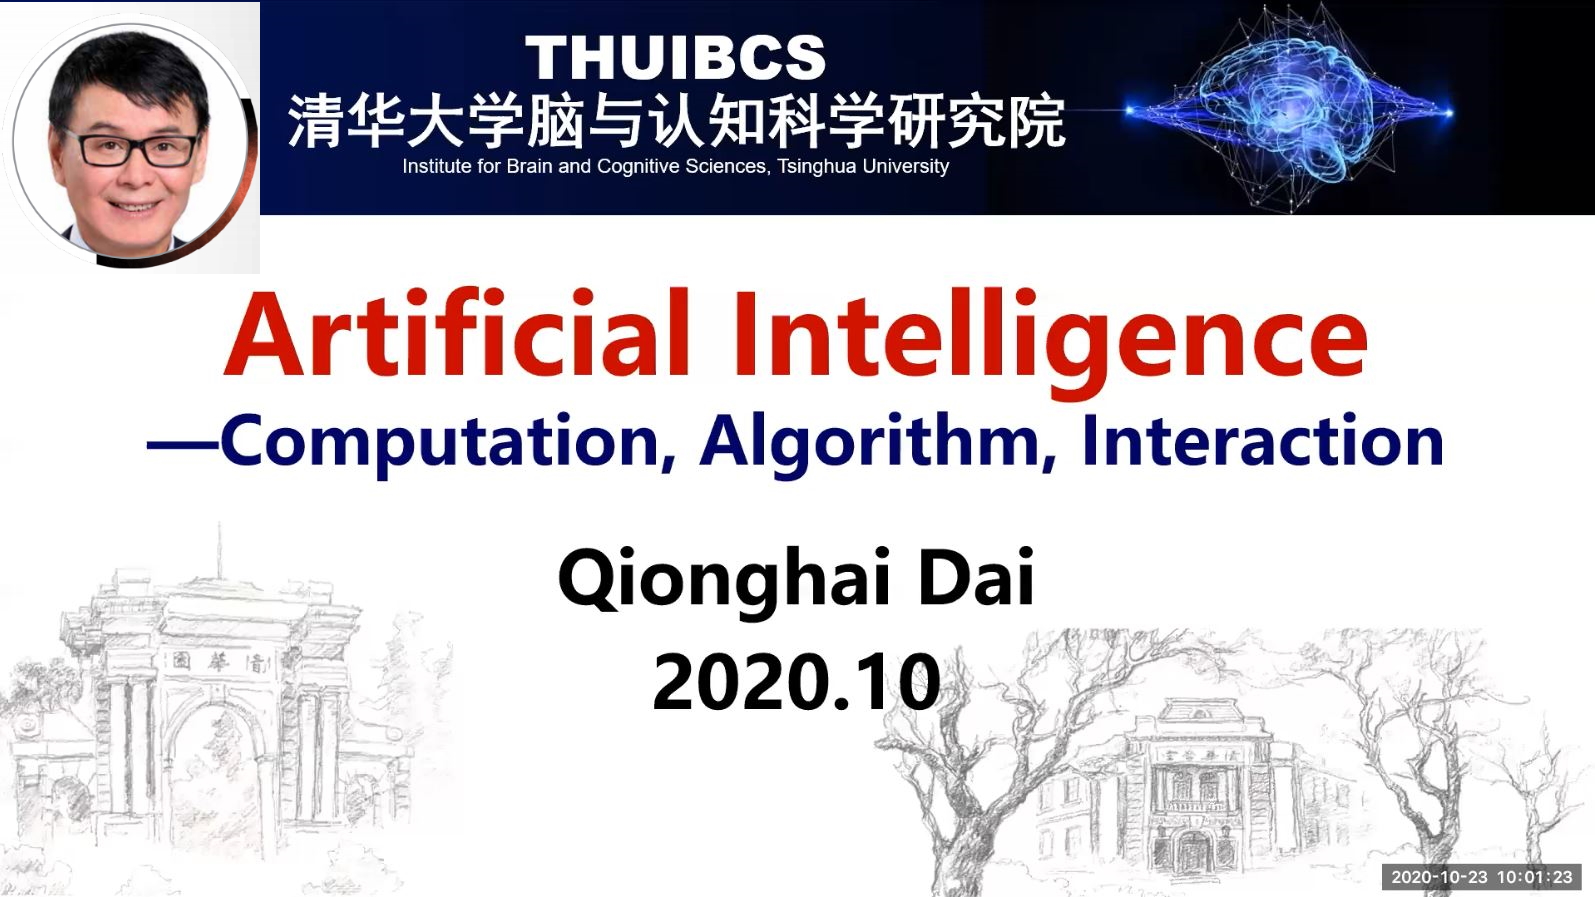 20201023_Professor_Qionghai_DAI